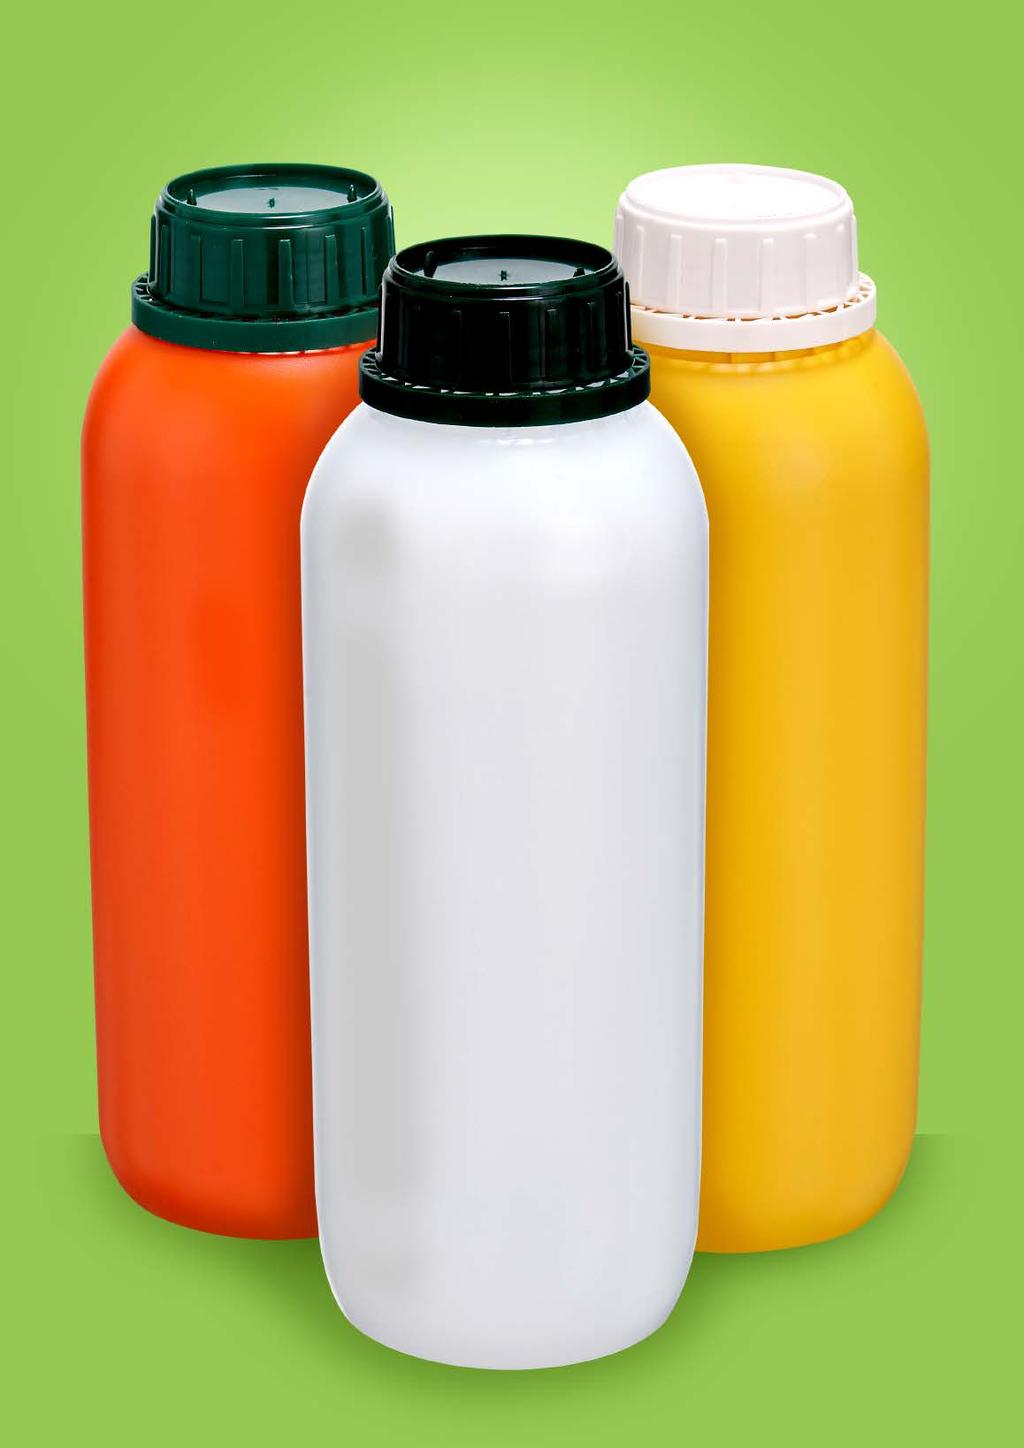 Embalagens 1 Litro Frasco 01 litro Frasco com capacidade de 1 litro, um bocal, tampa plás ca auto-lacre. Polie leno de alta densidade.